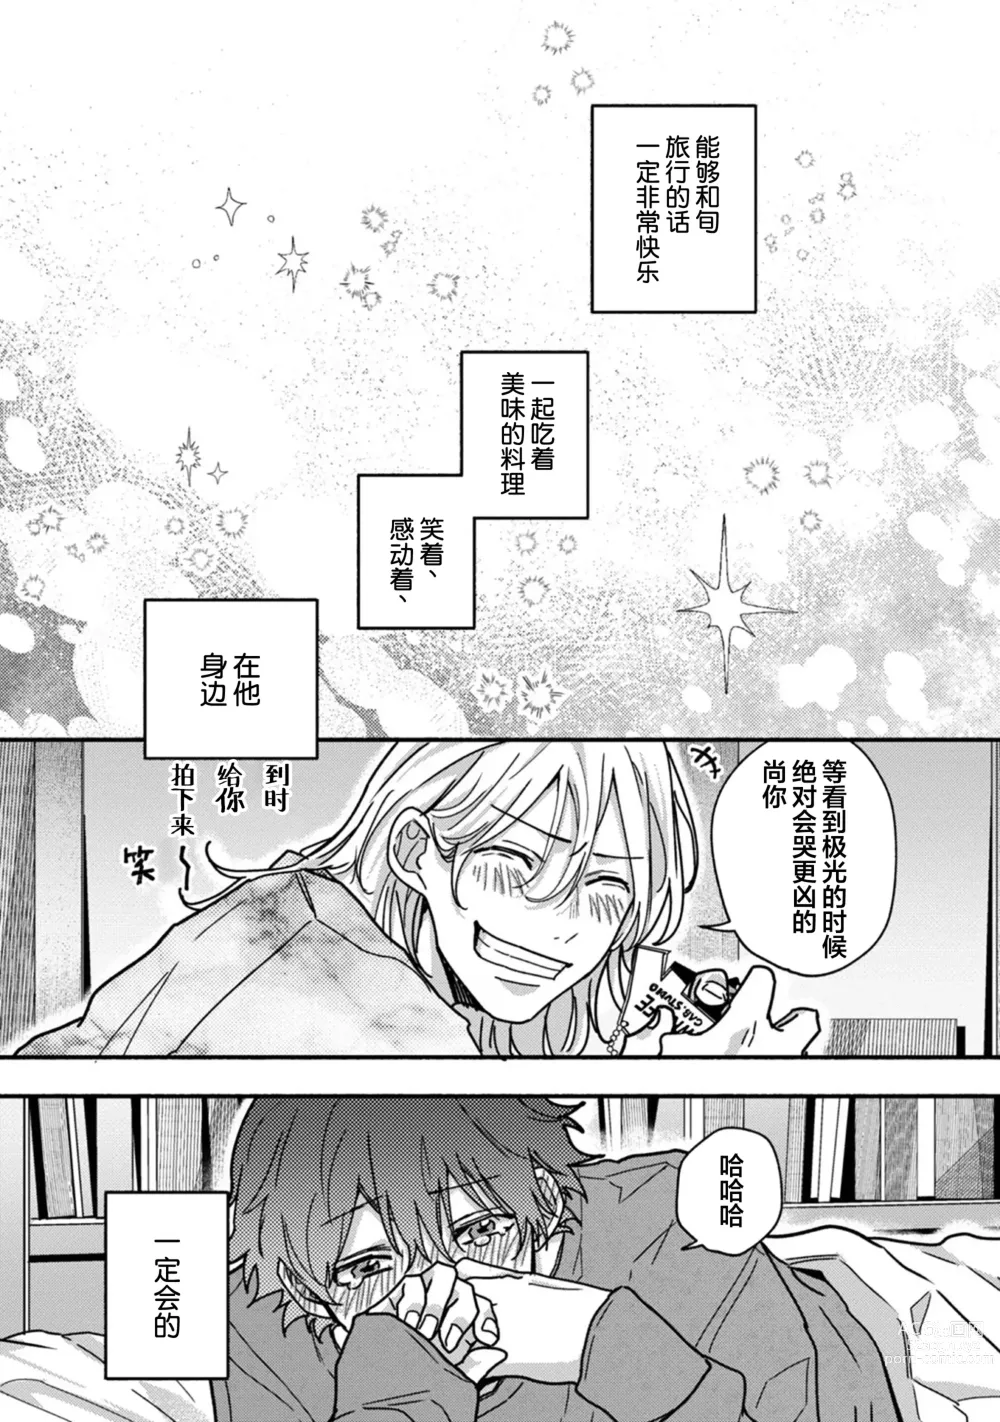 Page 178 of manga 谎言与黄色小刀